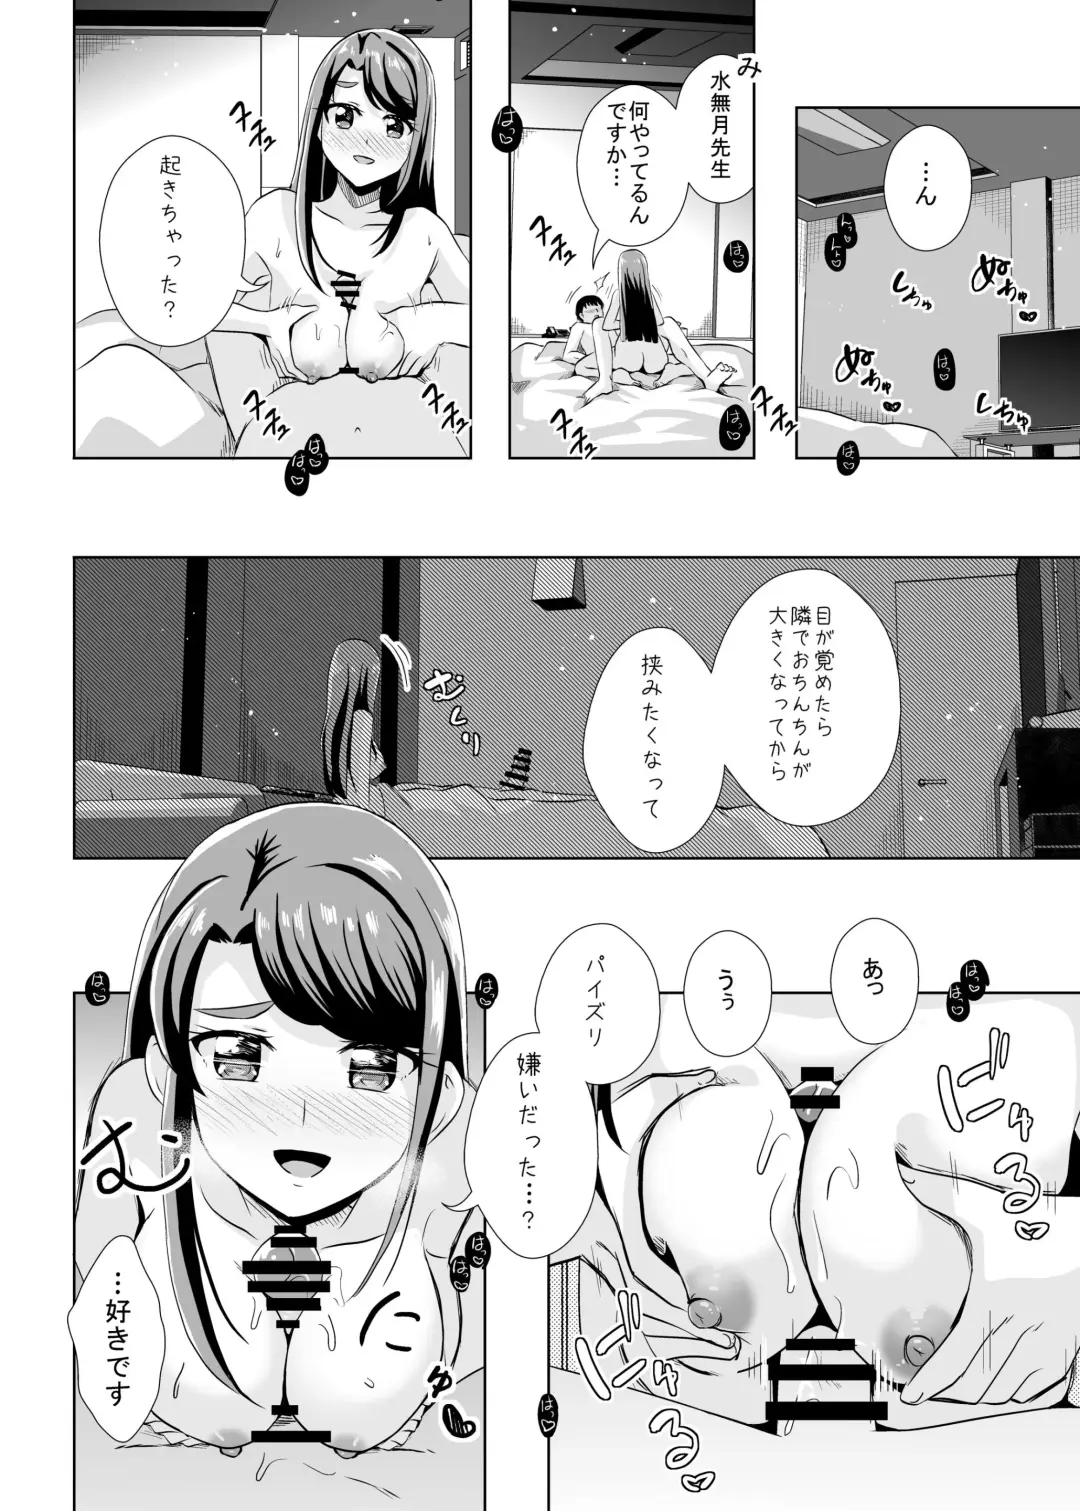 [Mira] Ecchi ga Suki ja Dame? Vol, 05 - Kibou no Chikara ~Otona Pretty Cure 23~ Fhentai.net - Page 10